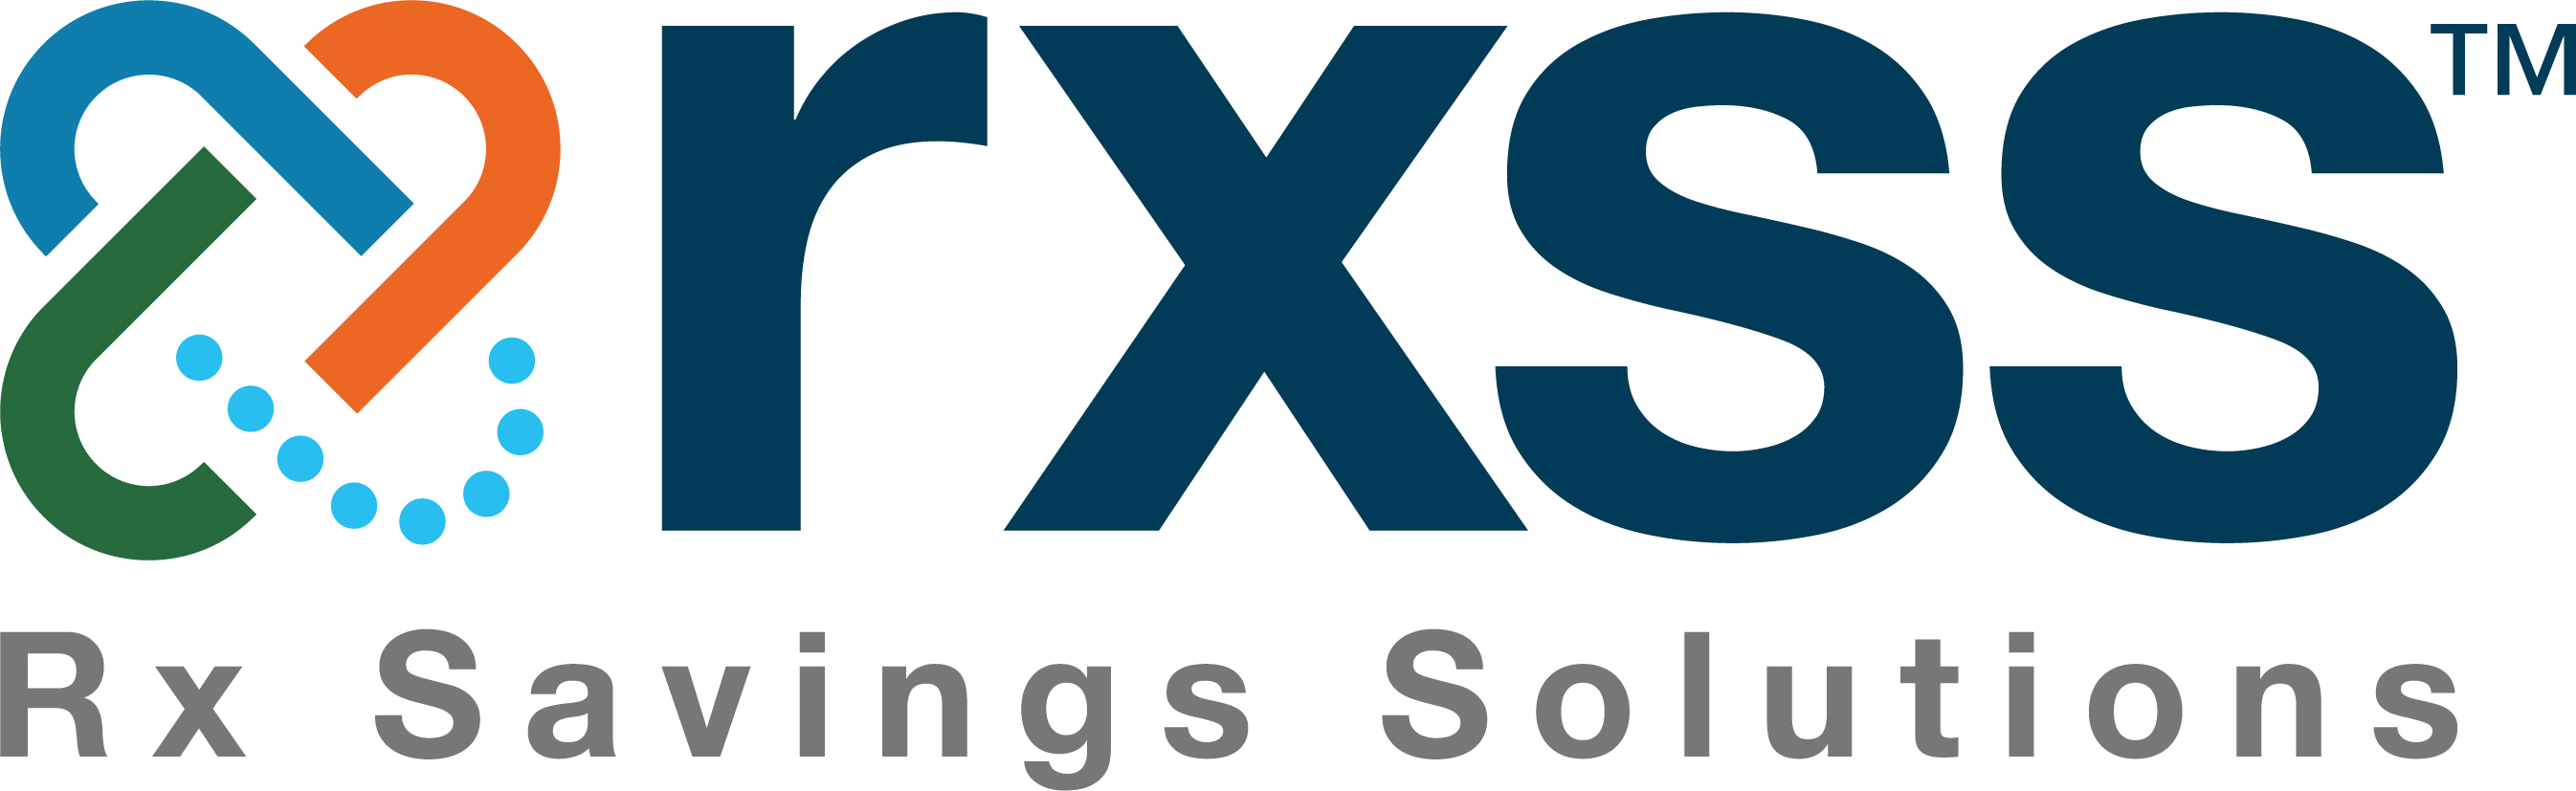 rxss RX Savings Solutions logo